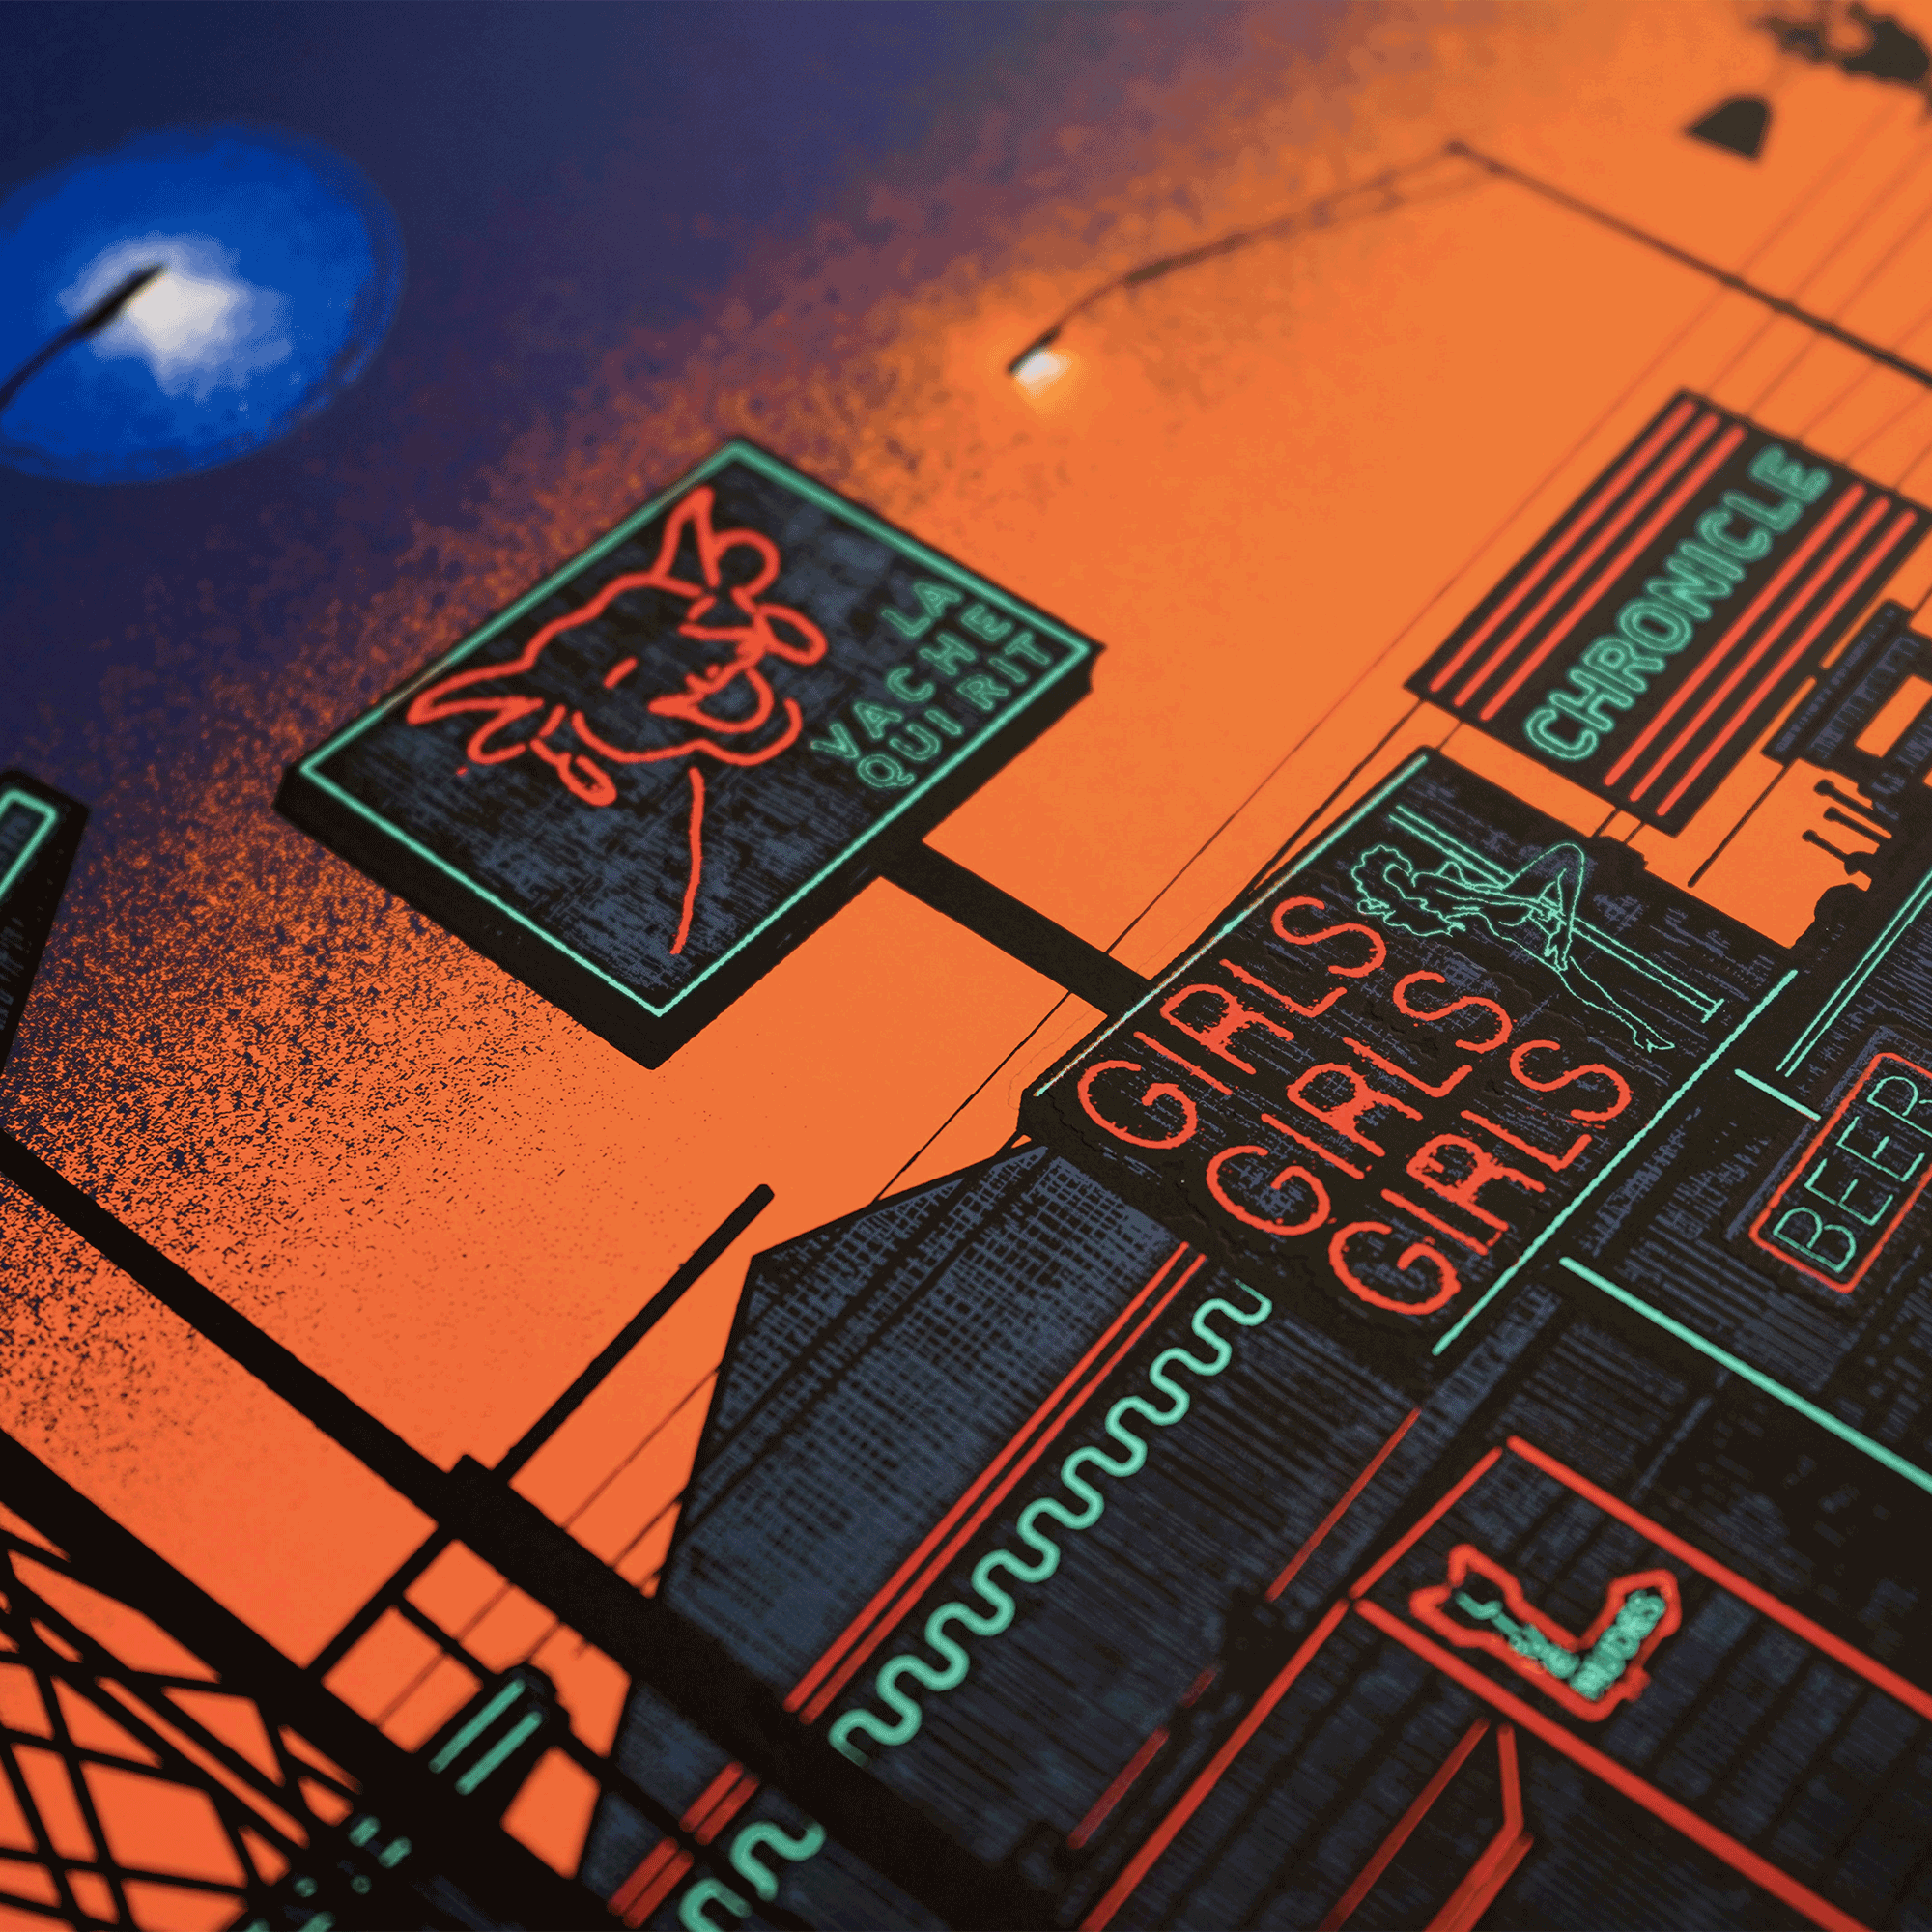 Plakat - maison d'edition d'affiche en serigraphie - affiche de cinema paris Texas sunset réalisée par dan McCarthy - imprimée en edition limitée numérotée main